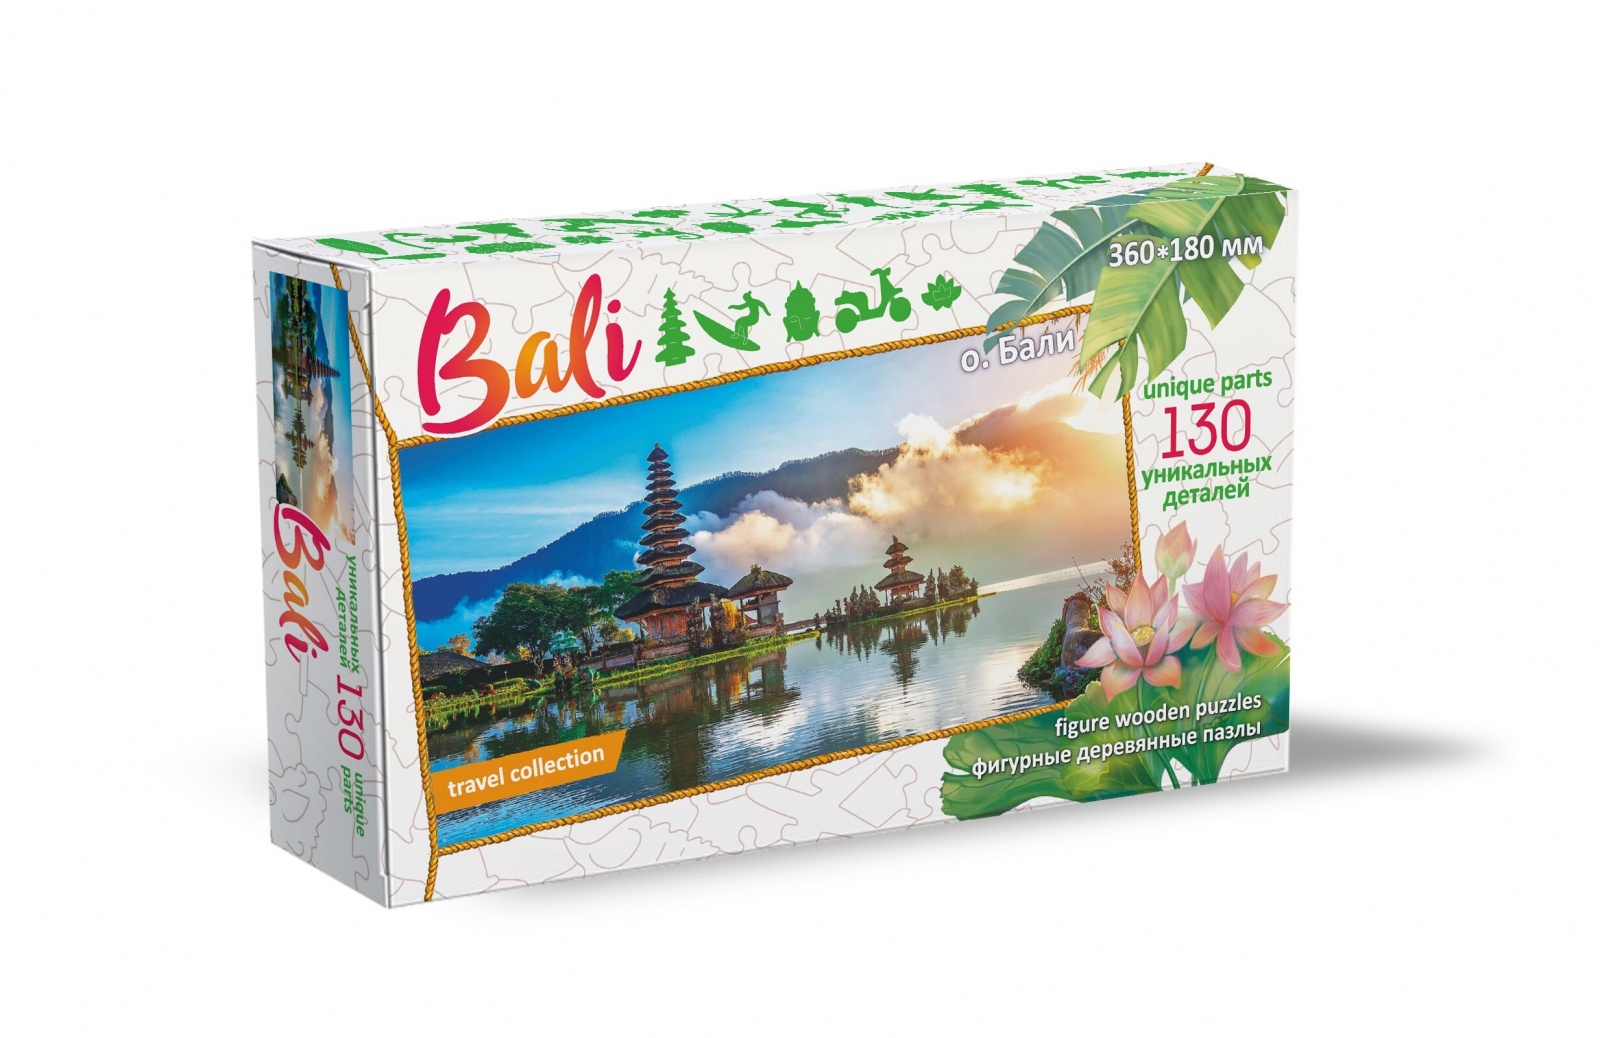 Пазлы Нескучные игры фигурный, деревянный, Travel collection о. Бали, 130 деталей